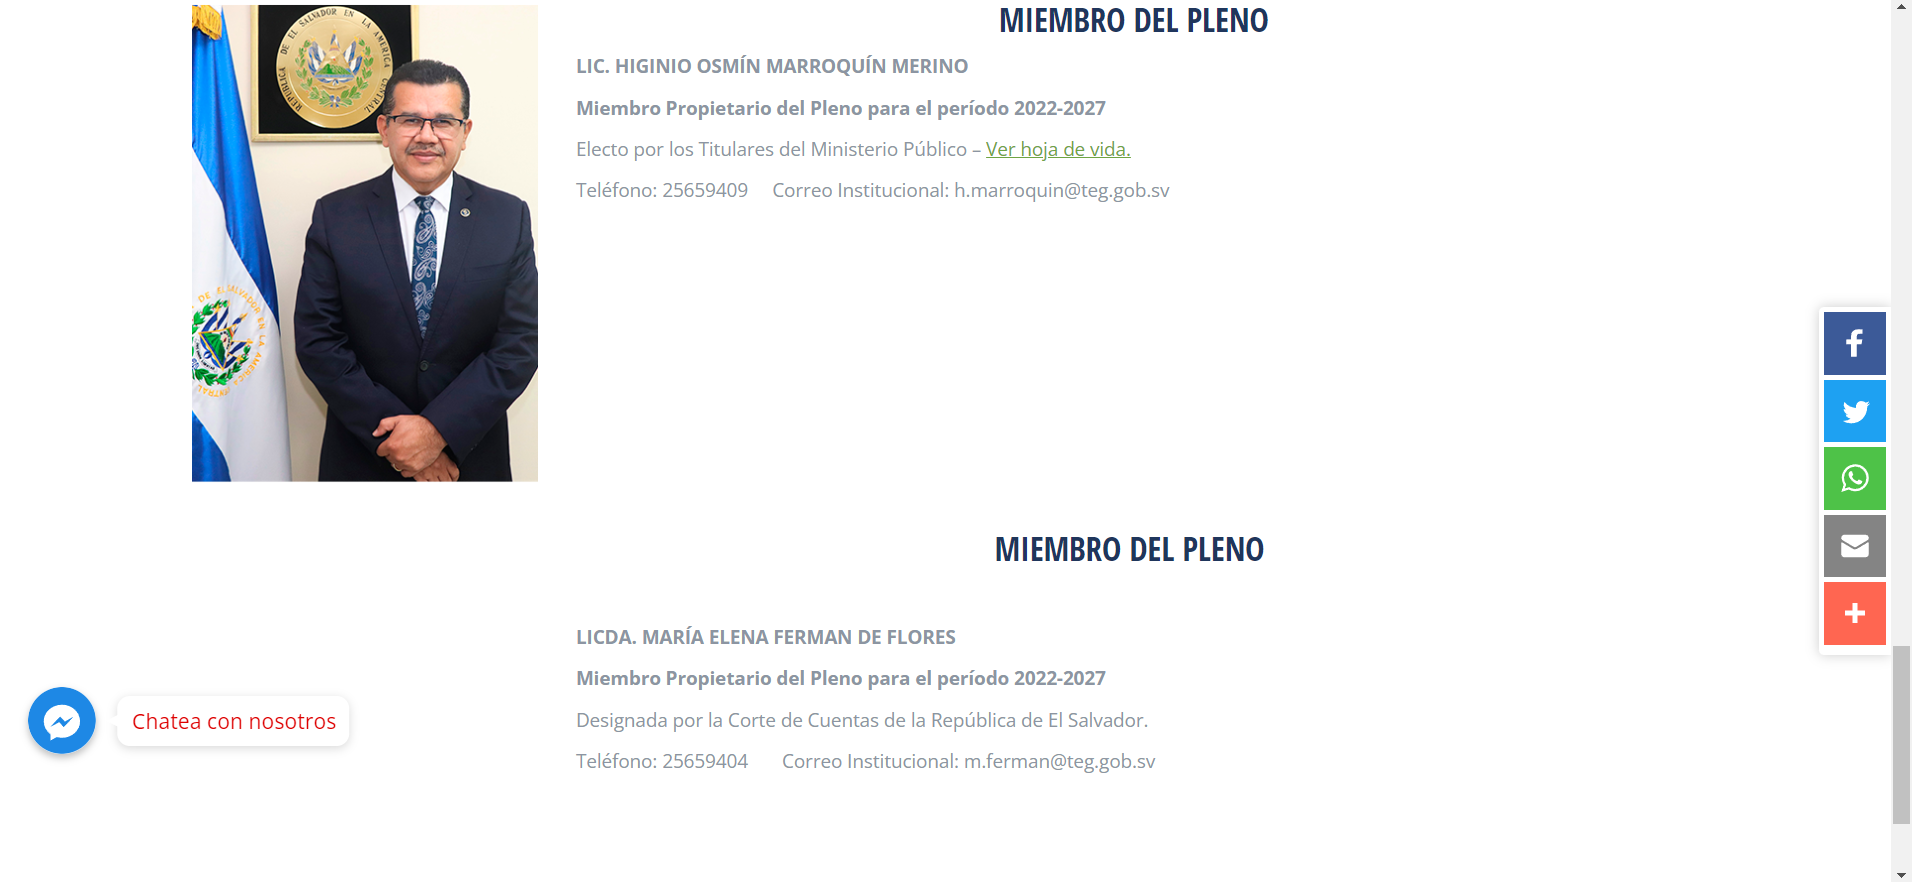 Así lucía la página web del Tribunal de Ética Gubernamental hasta el viernes 28 de octubre de 2022. La información sobre Lidia María Elena Fermán fue eliminada ese día. 